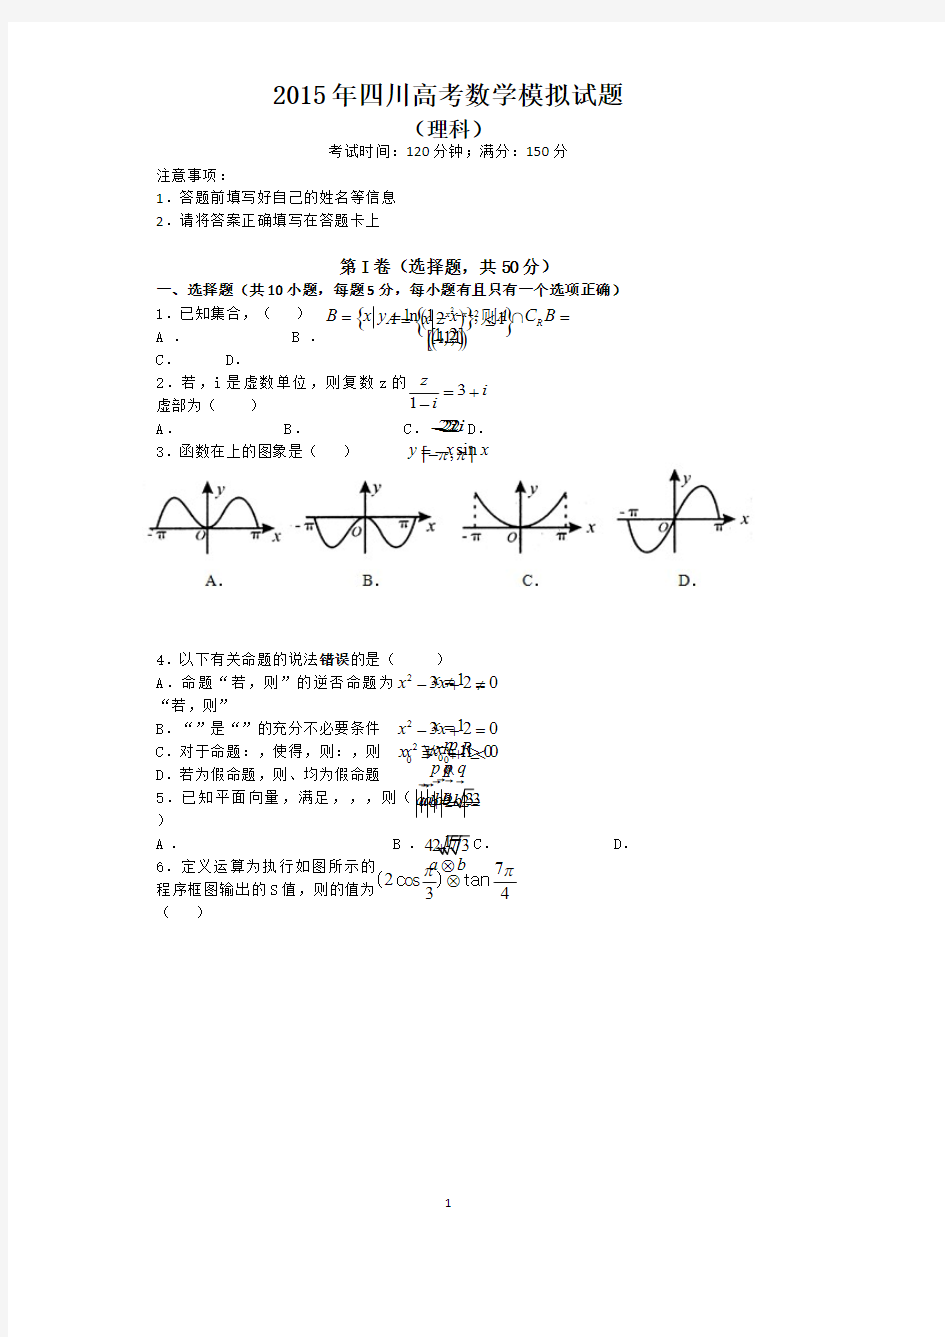 【帮帮群】四川高考数学模拟试题理科